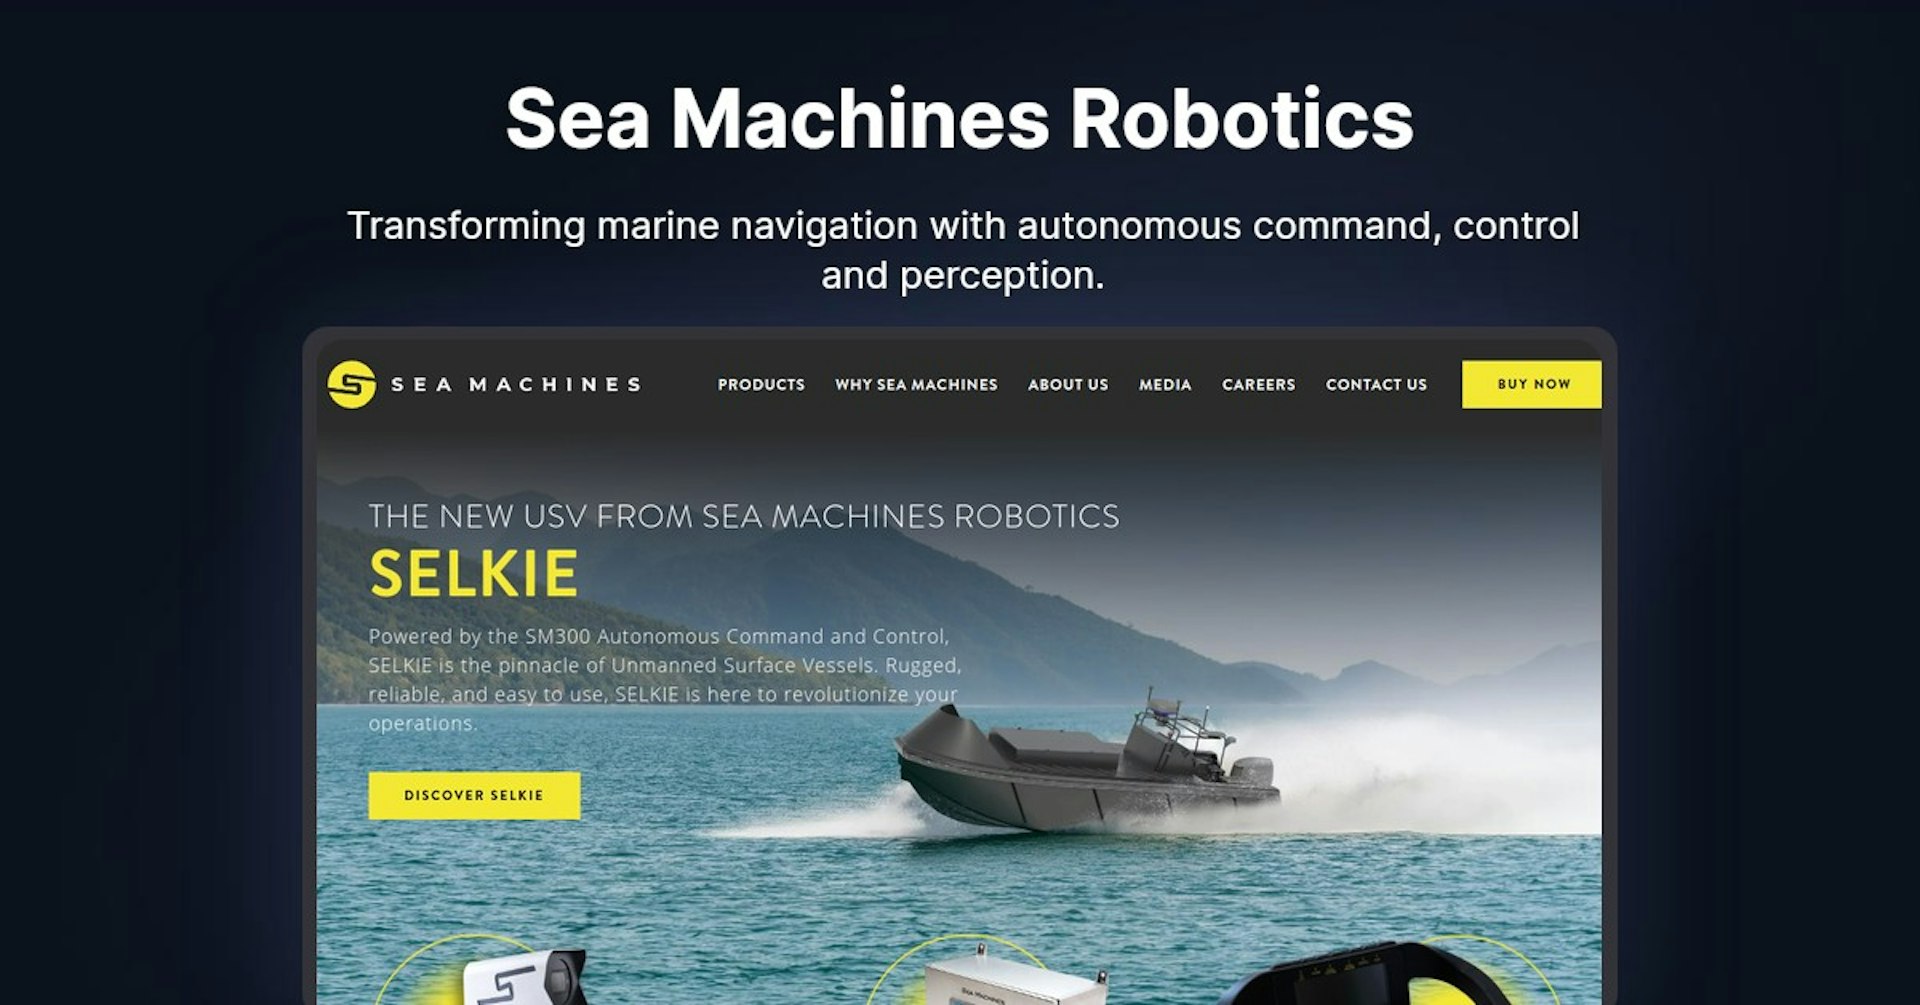 Sea Machines Robotics